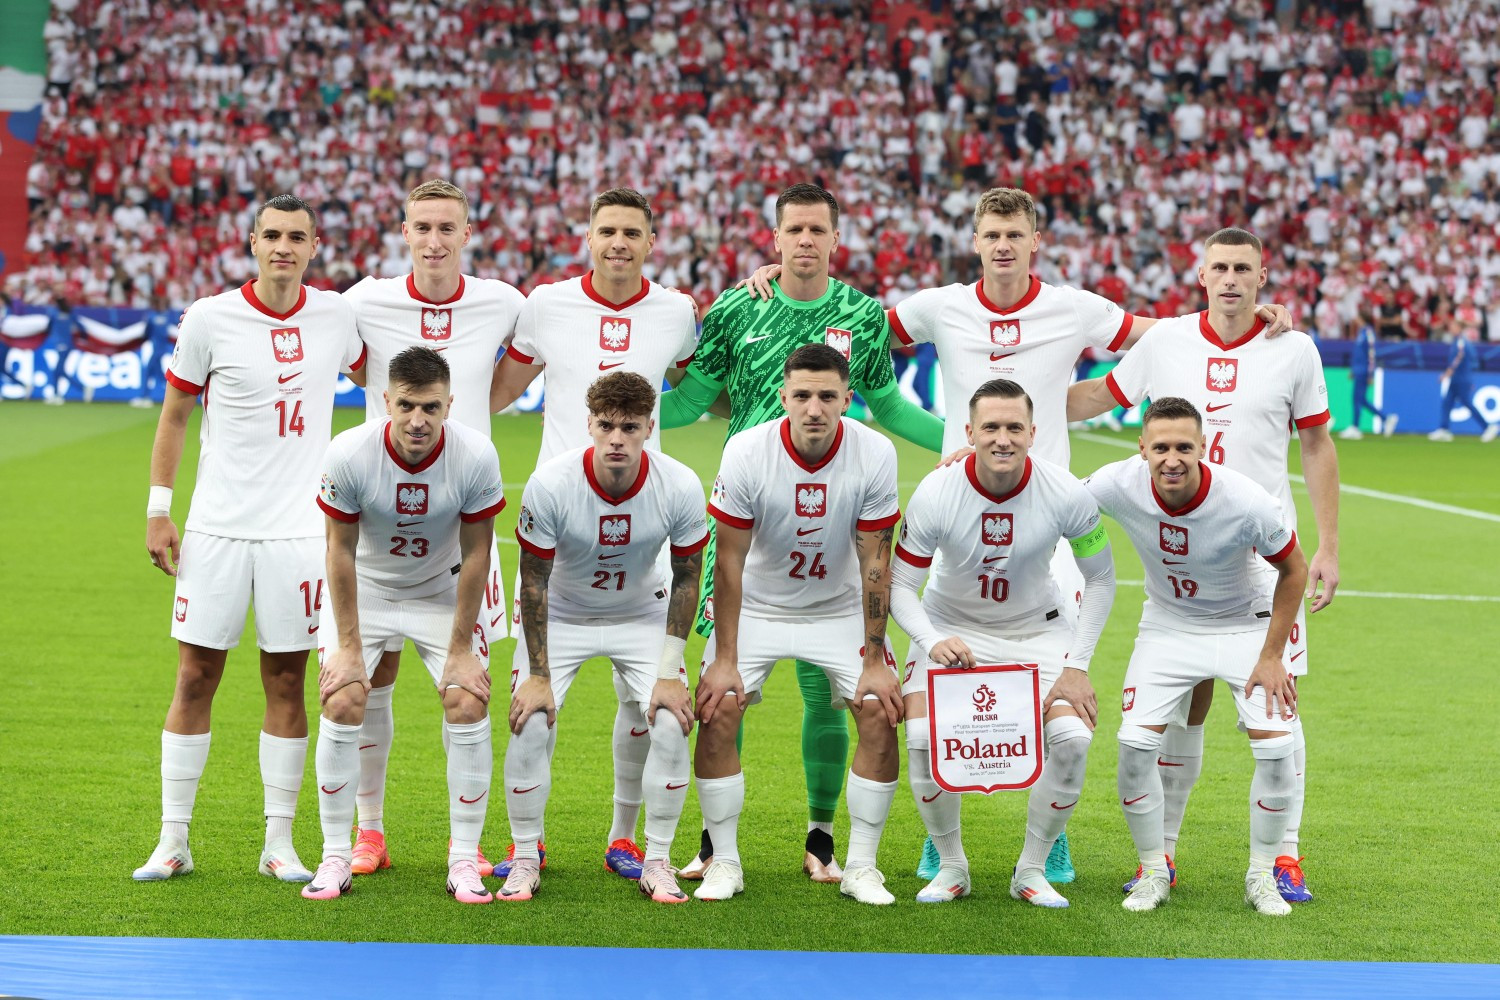 OFFICIELLEMENT : On connaît l’arbitre du match Pologne-France